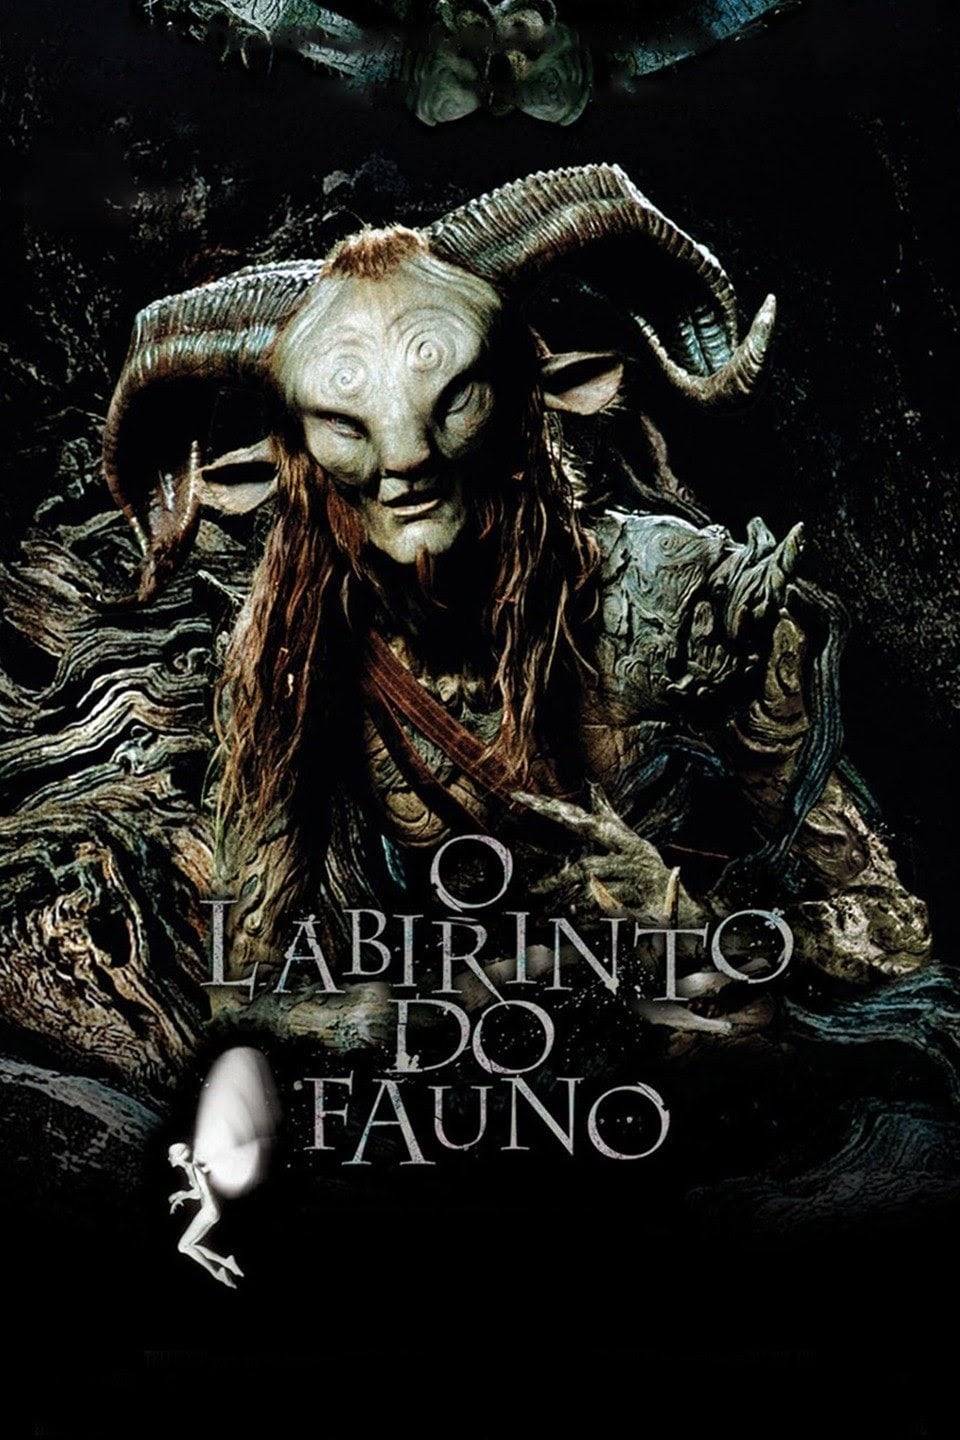 Poster for the movie "O Labirinto do Fauno"